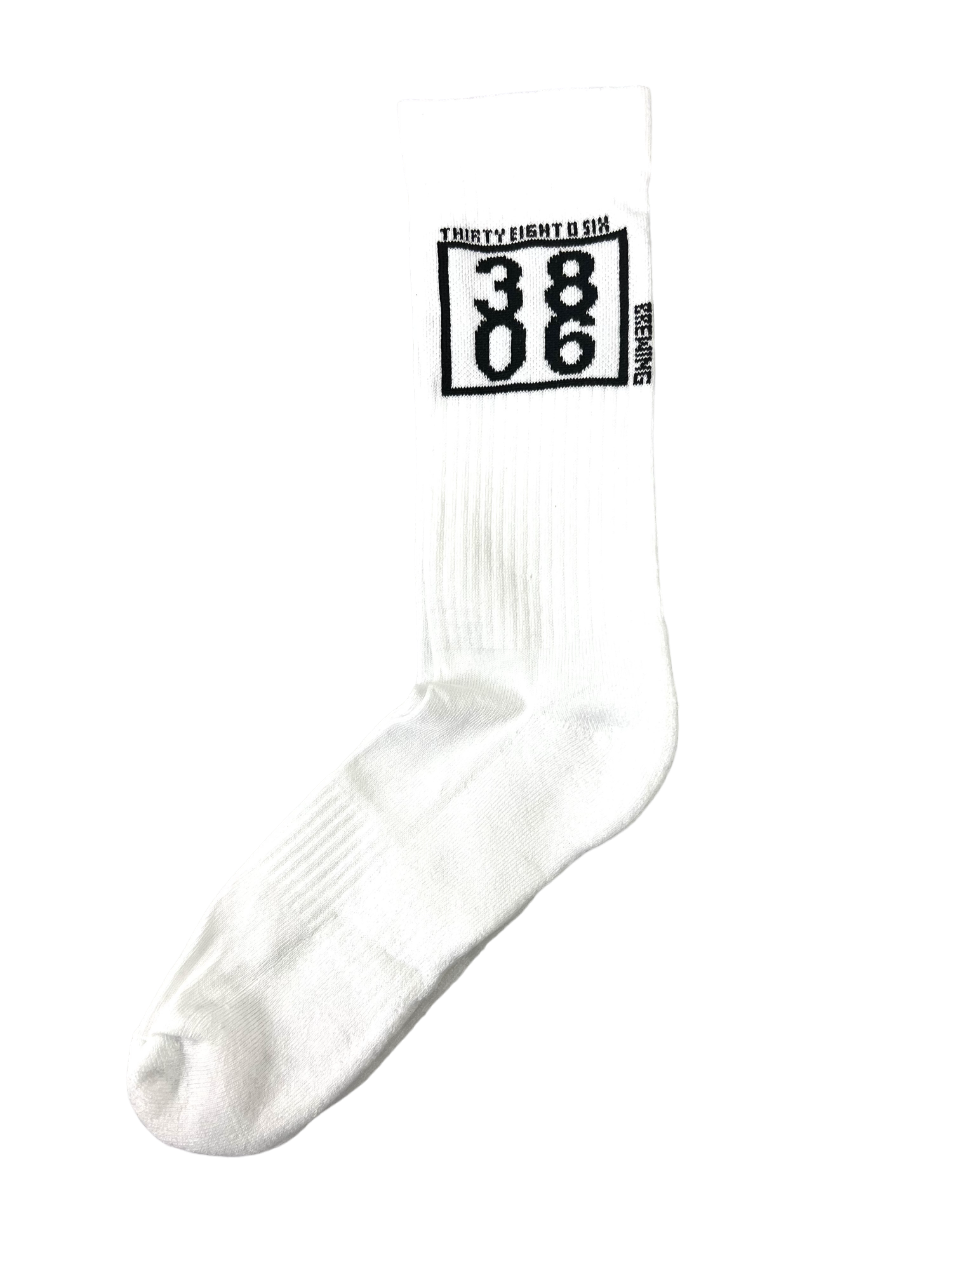 3806 White Socks